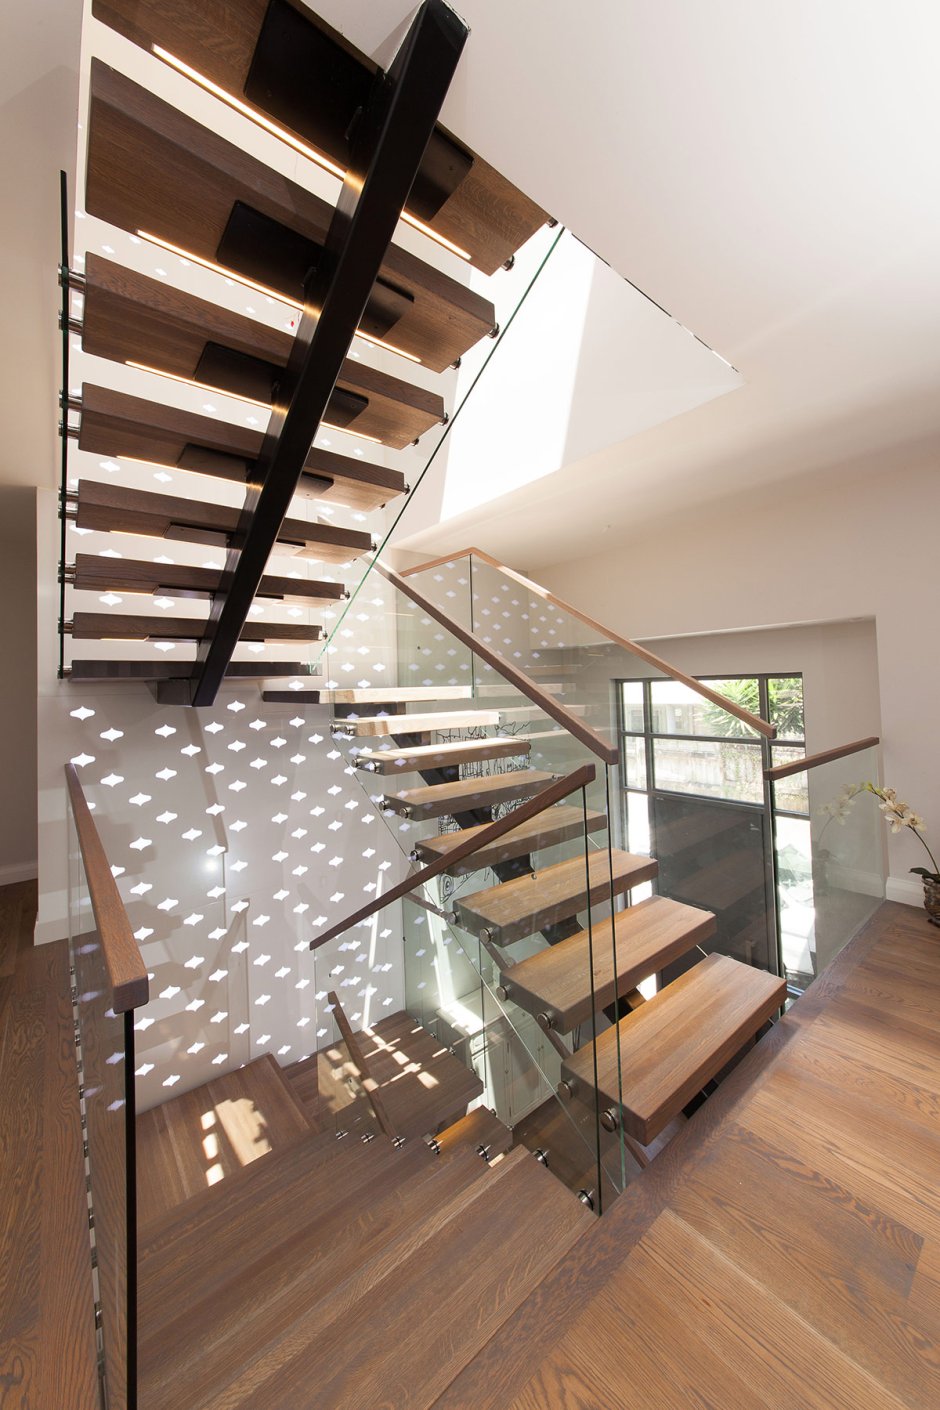 Офис архитектурной студии с винтовой лестницей